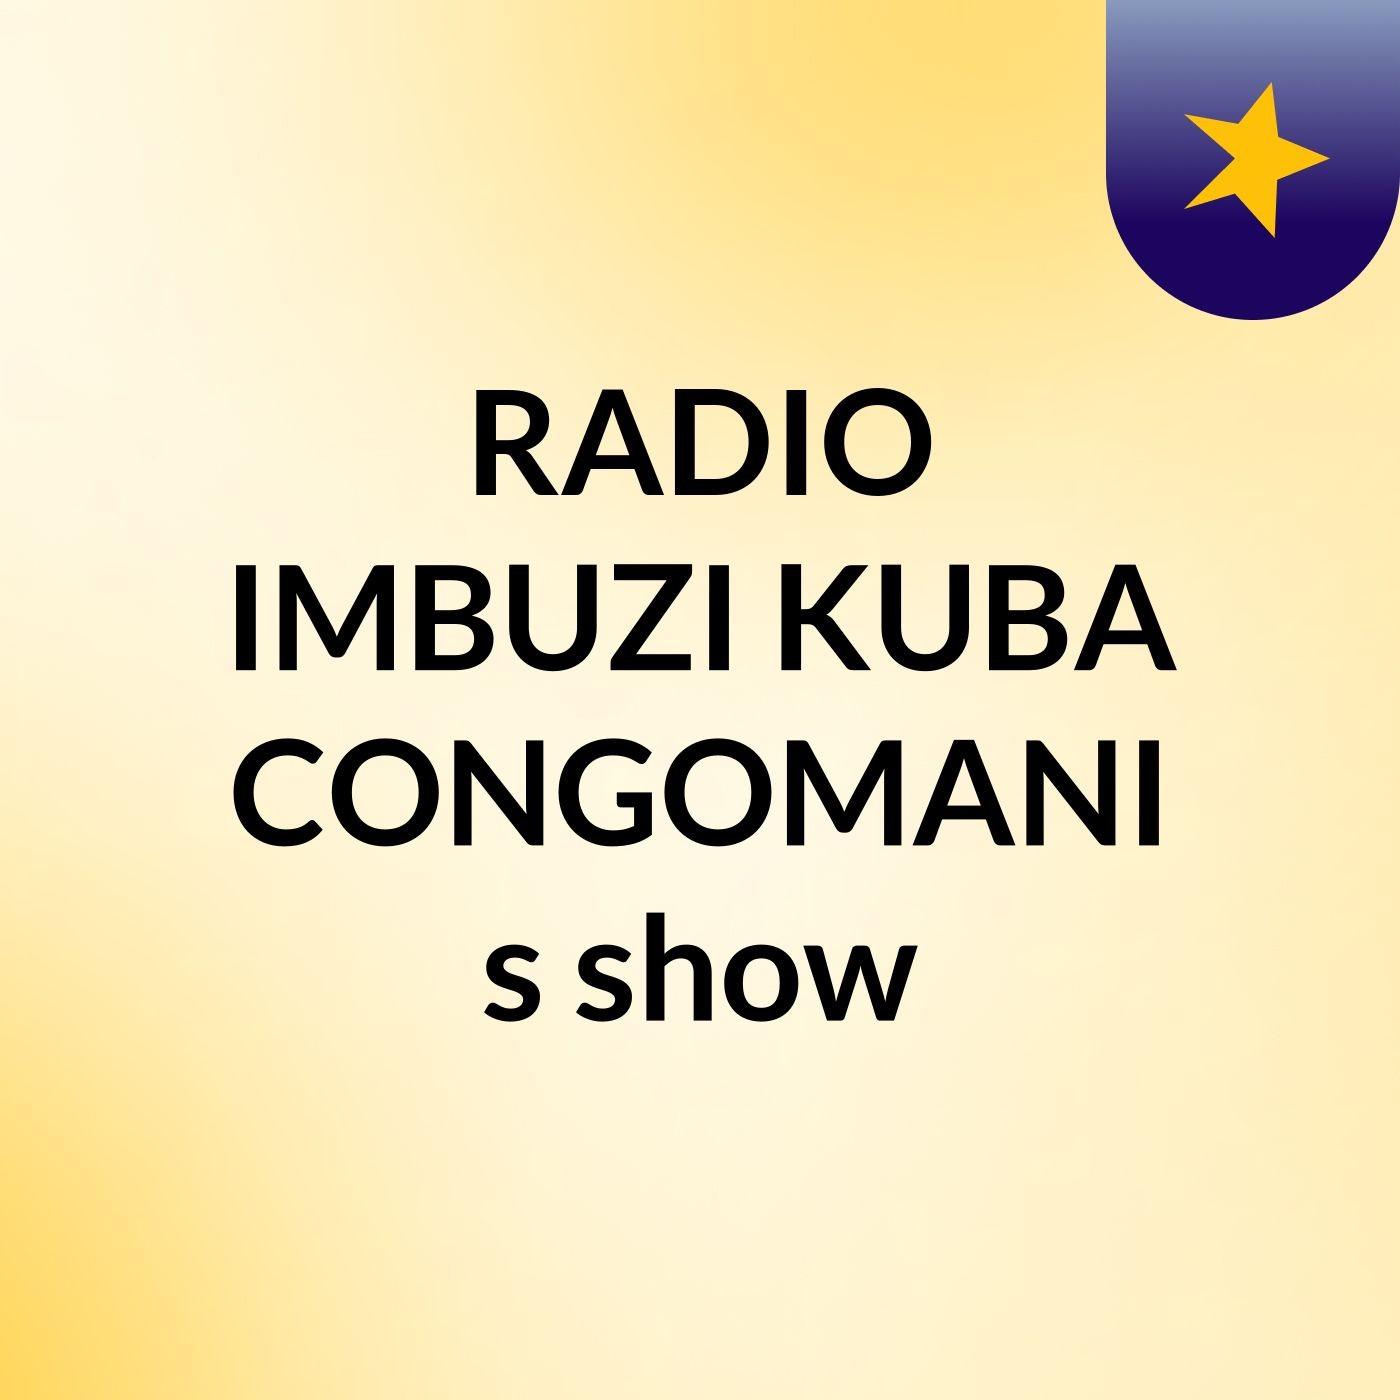 Episode 3 - RADIO IMBUZI KUBA CONGOMANI's show